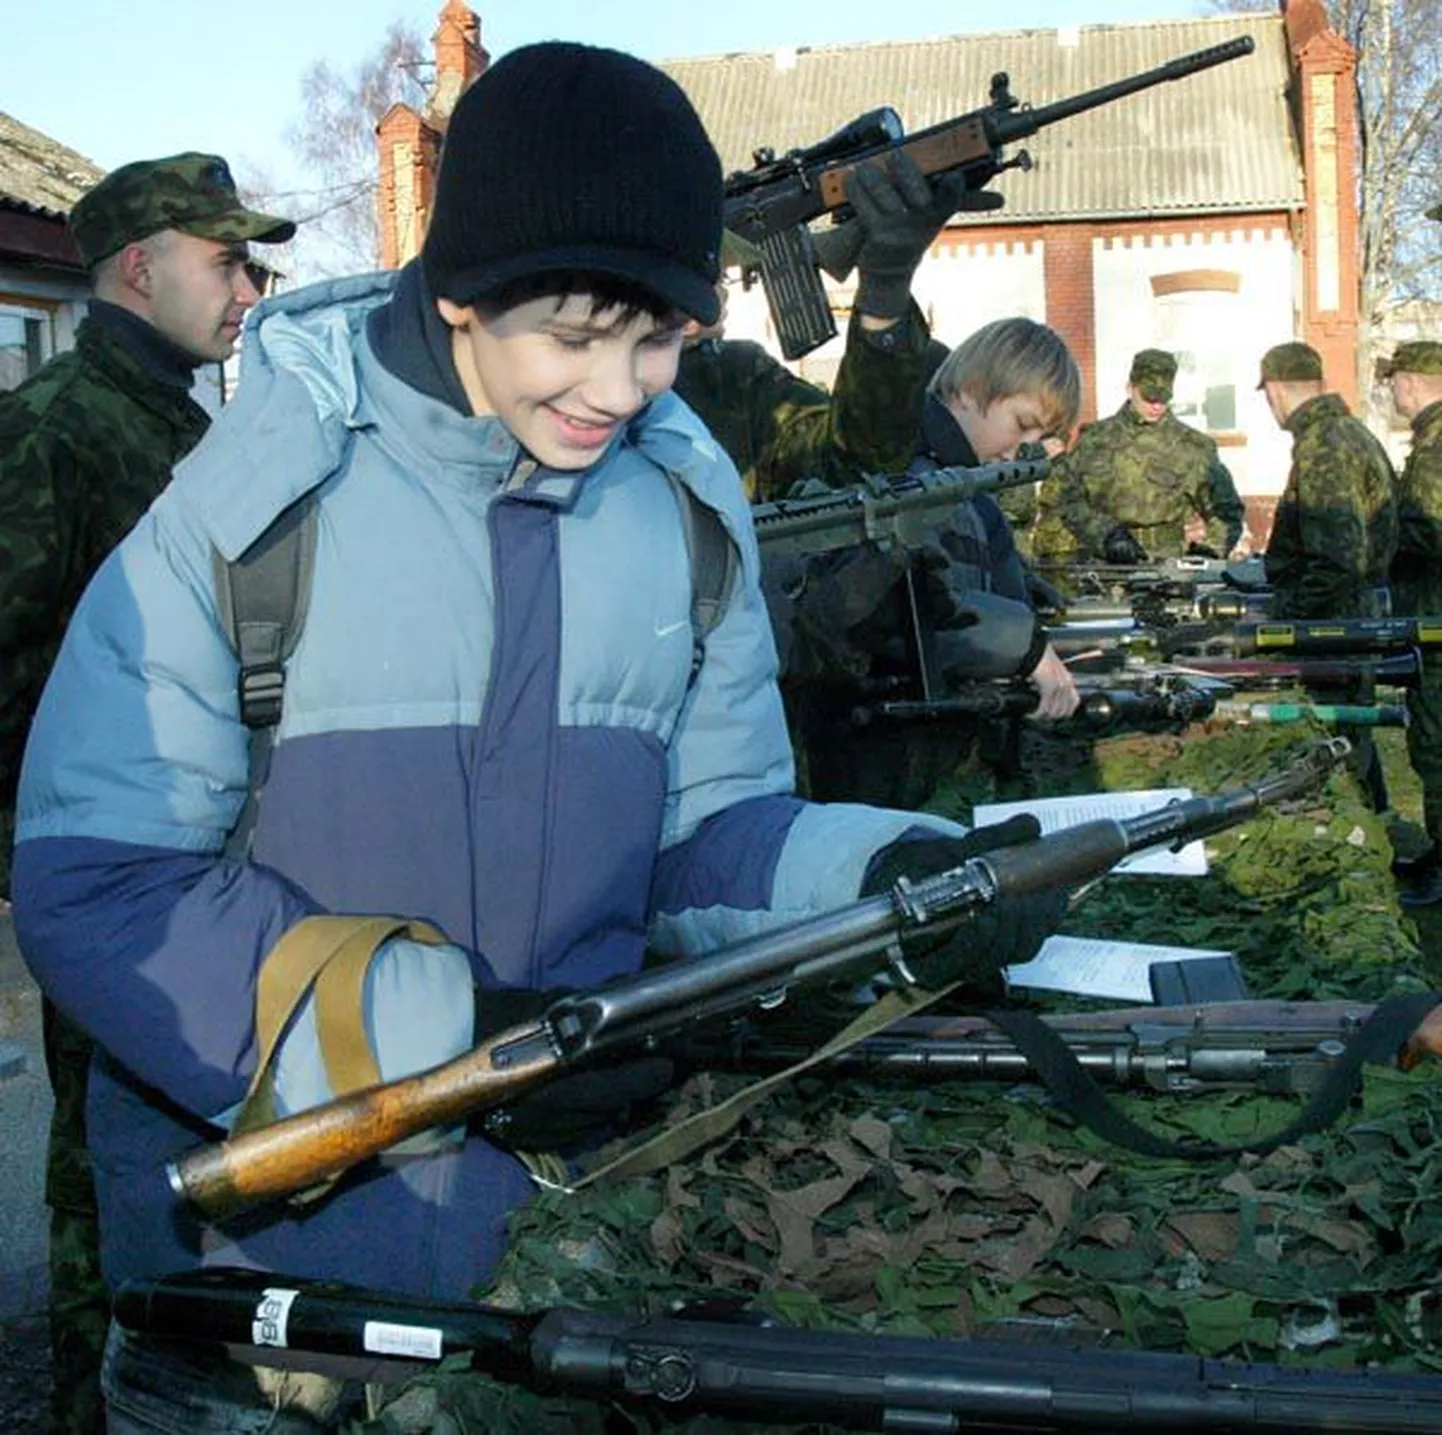 Lahtiste uste päev Pärnu garnisonis pataljoni sünnipäeval 21. novembril. Kaitseväelastega vahetult suheldes kasvab noorte kaitsetahe mühinal.

Ants Liigus